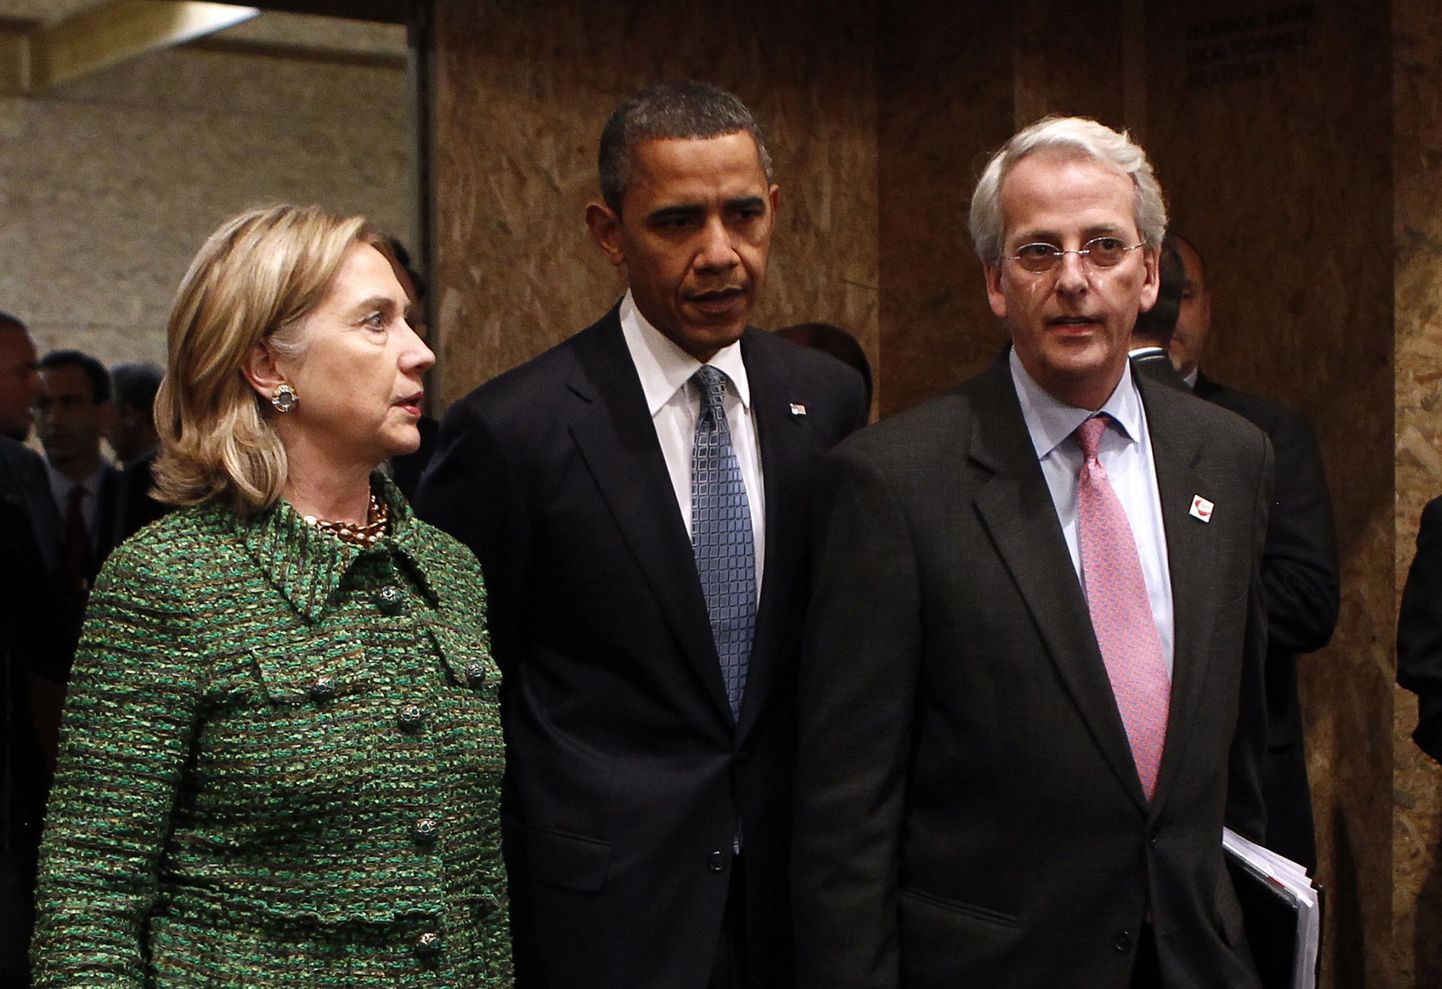 Ühendriikide välisminister Hillary Clinton, president Barack Obama ja suursaadik NATO juures Ivo Daalder mullu novembris Lissaboni tippkohtumisel.